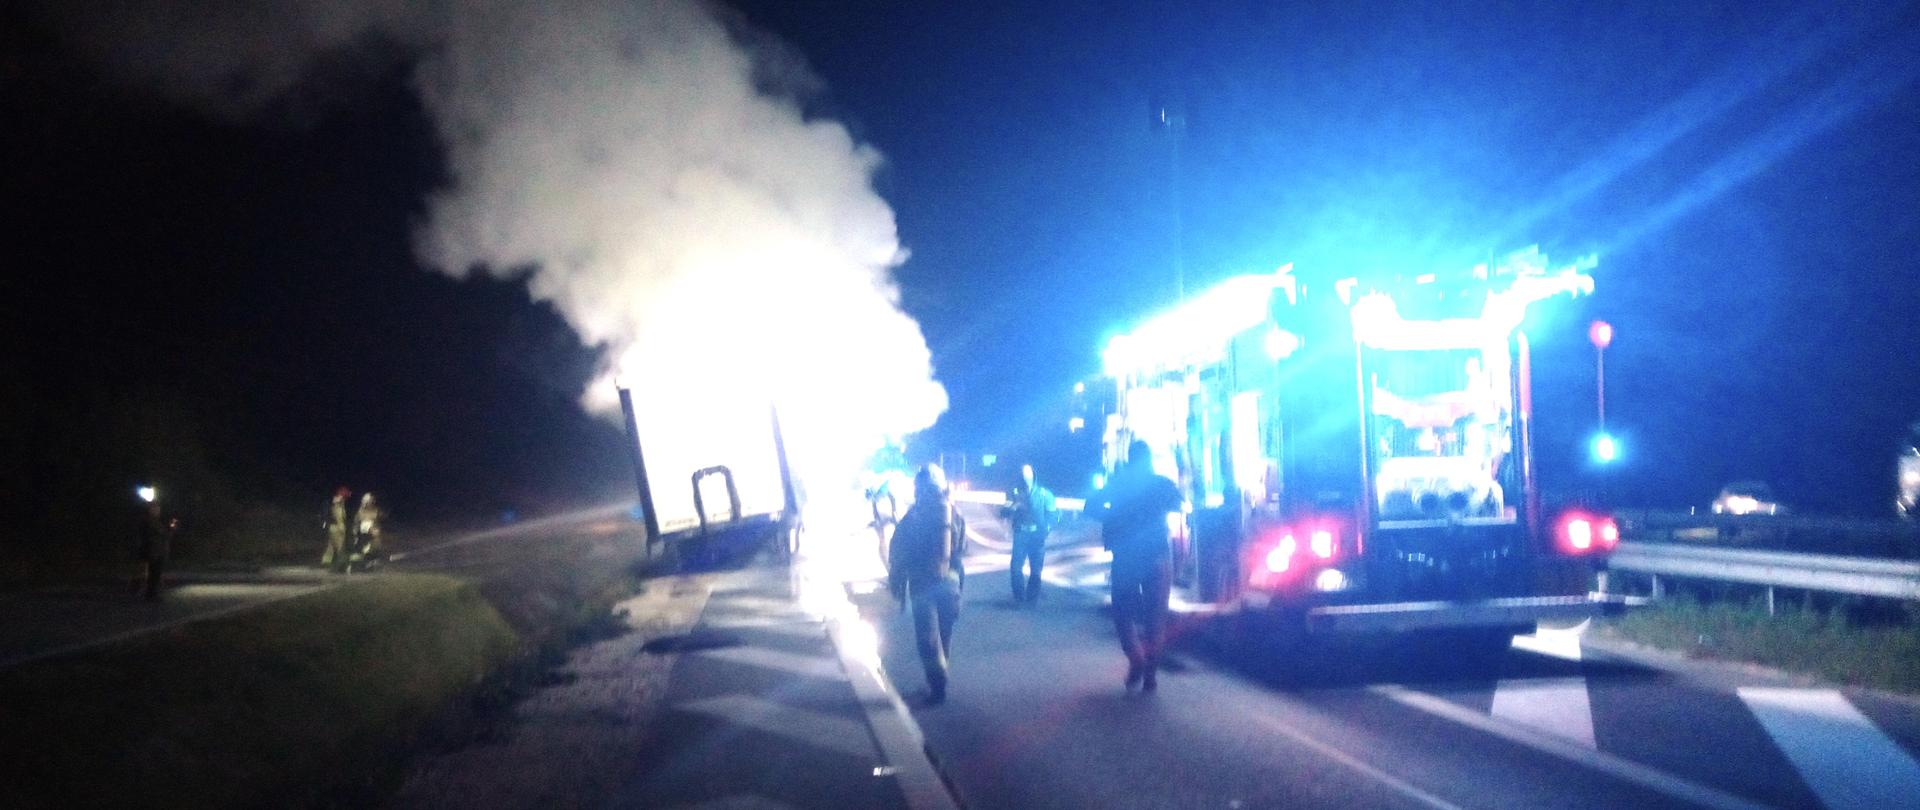 Zdjęcie przedstawia ulicę na której doszło do pożaru naczepy ciągnika siodłowego. Na drodze stoi wóz strażacki, przemieszczają się funkcjonariusze służb ratowniczych a na poboczu po lewej stronie stoi naczepa, z której unoszą się kłęby dymu i pary wodnej.